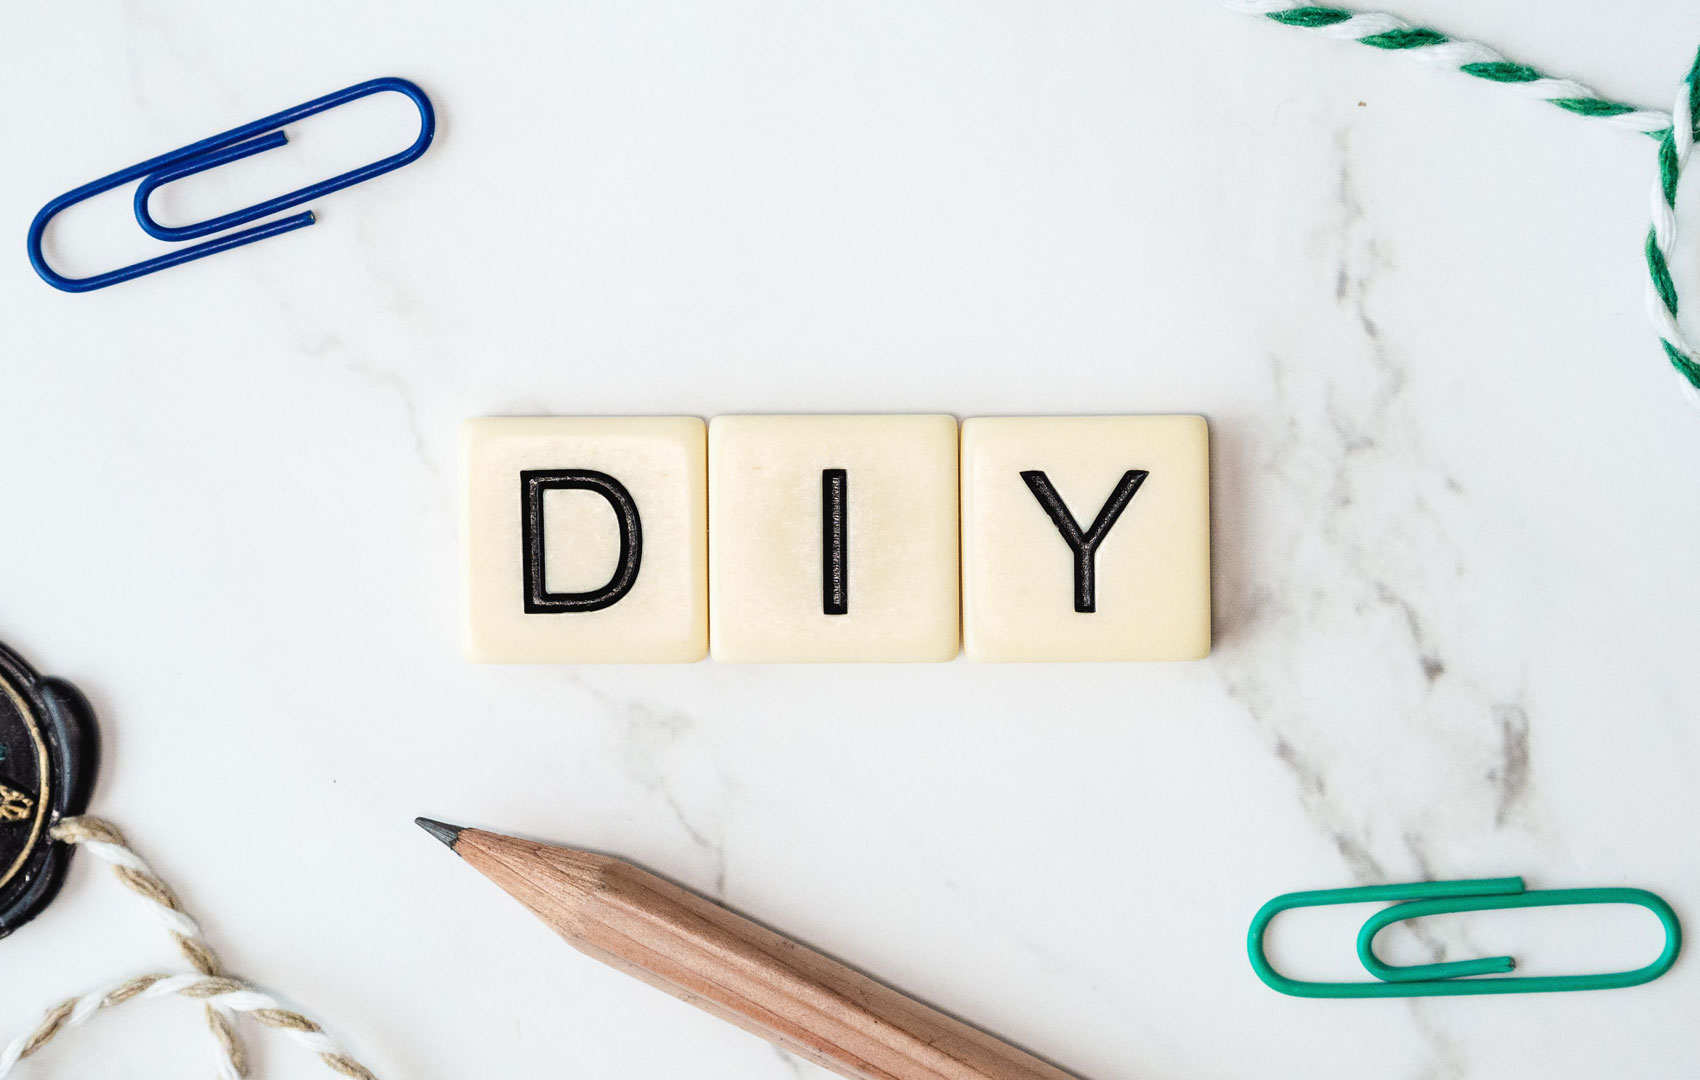 Drei Scrabble-Buchstabensteine formen das Wort D I Y. Außenherum sind ein Bleistift, Büroklammern und Fäden zu sehen.